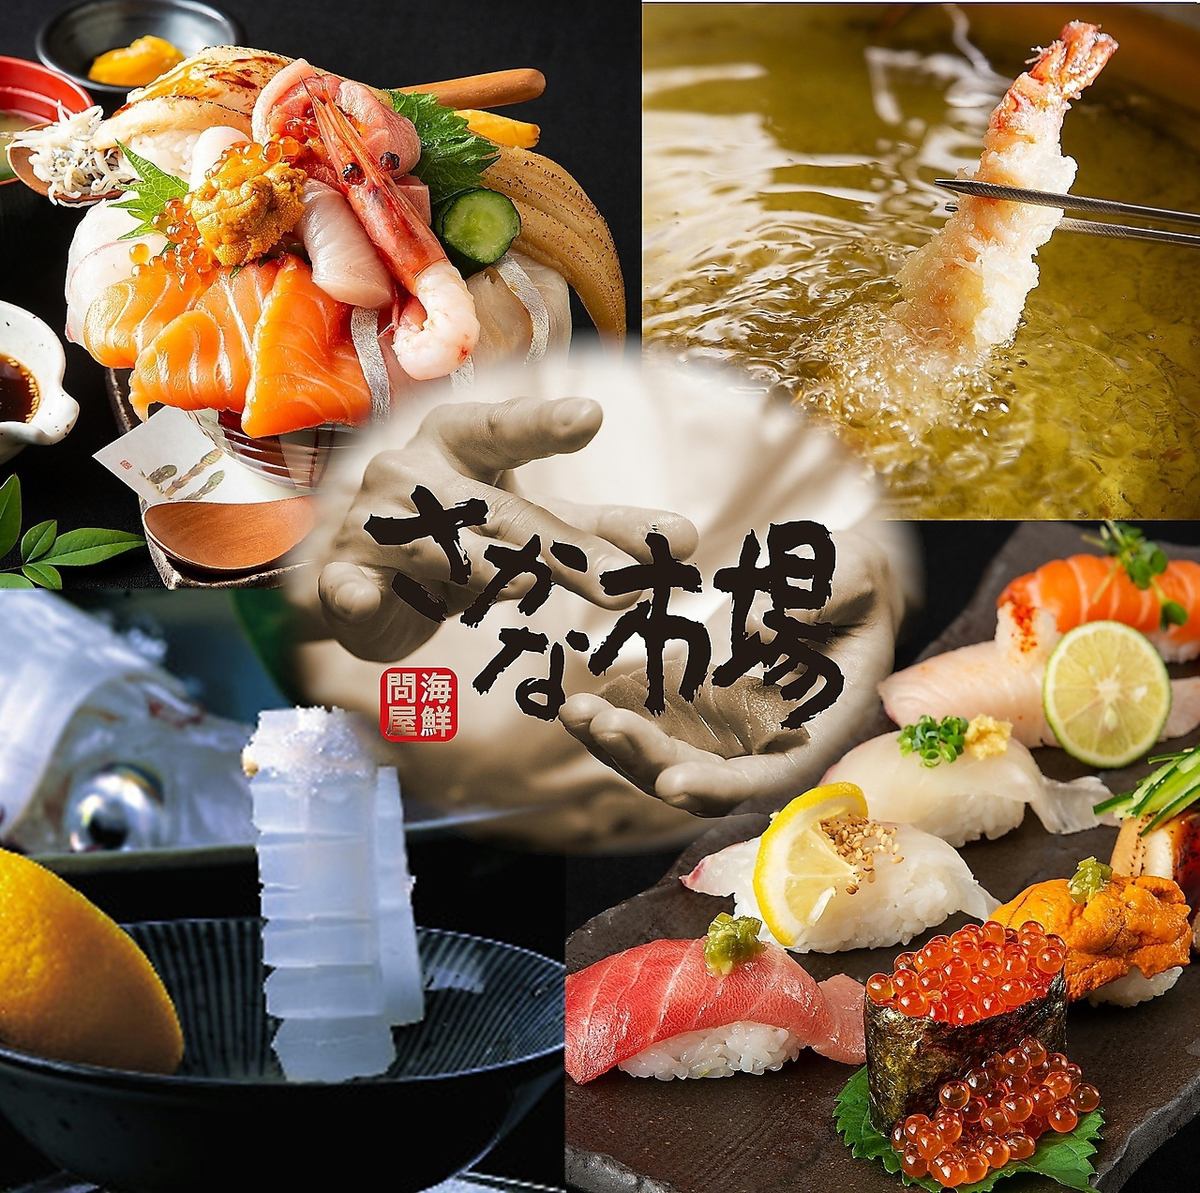 魚類市場特產“烏賊Ikizukuri”等美味魚類的價格合理